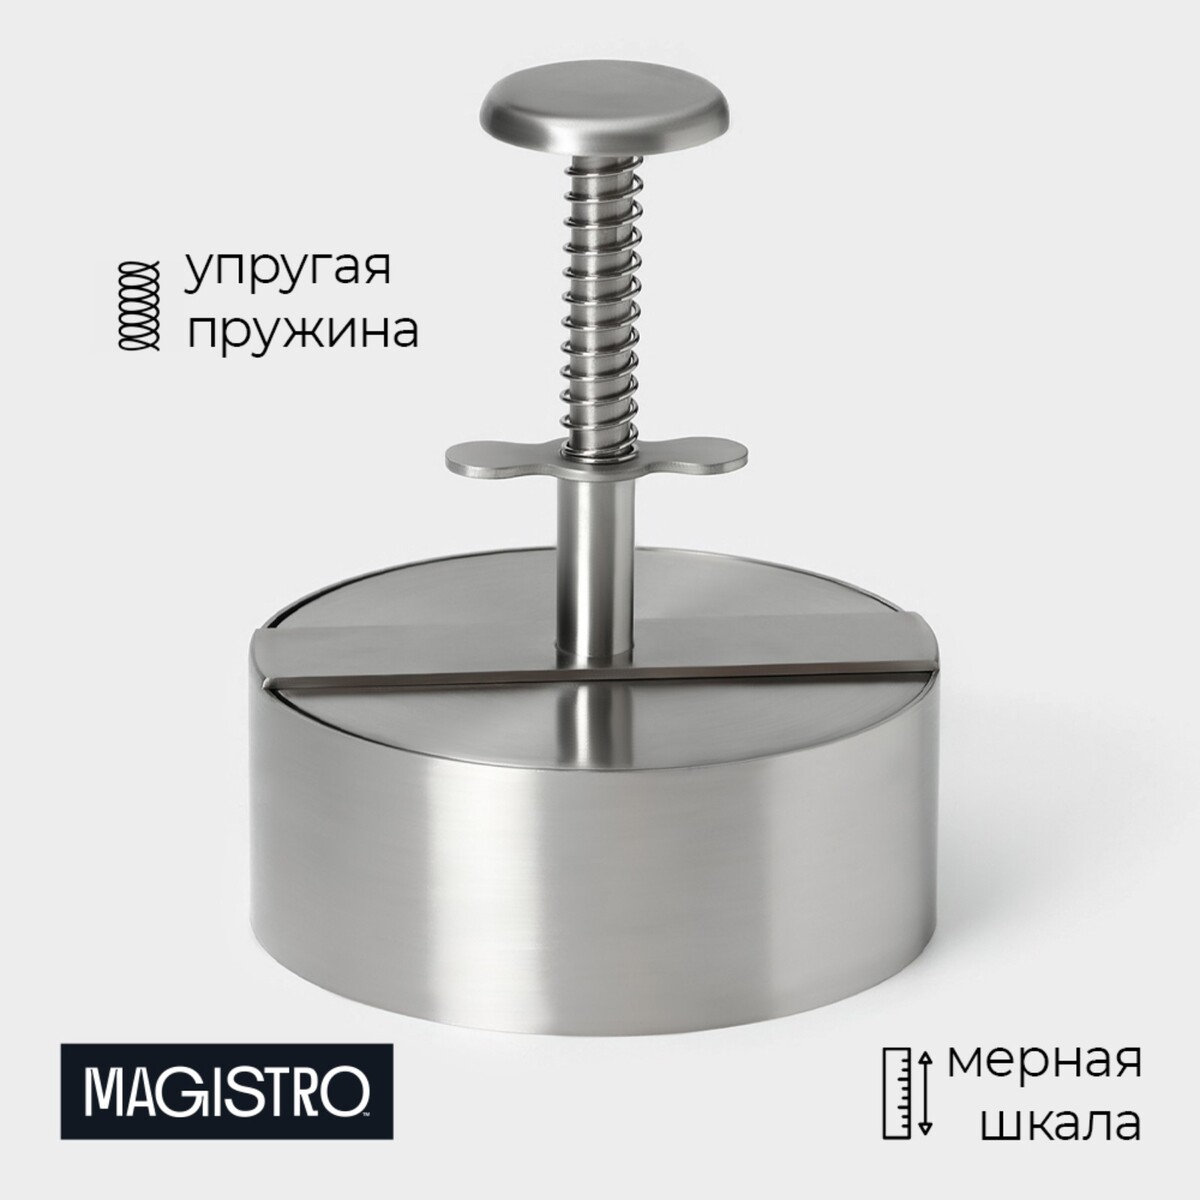 Пресс для бургеров magistro steel, 14×11.5 см, 304 сталь пресс для бургеров диаметр рабочей части 9 2 см